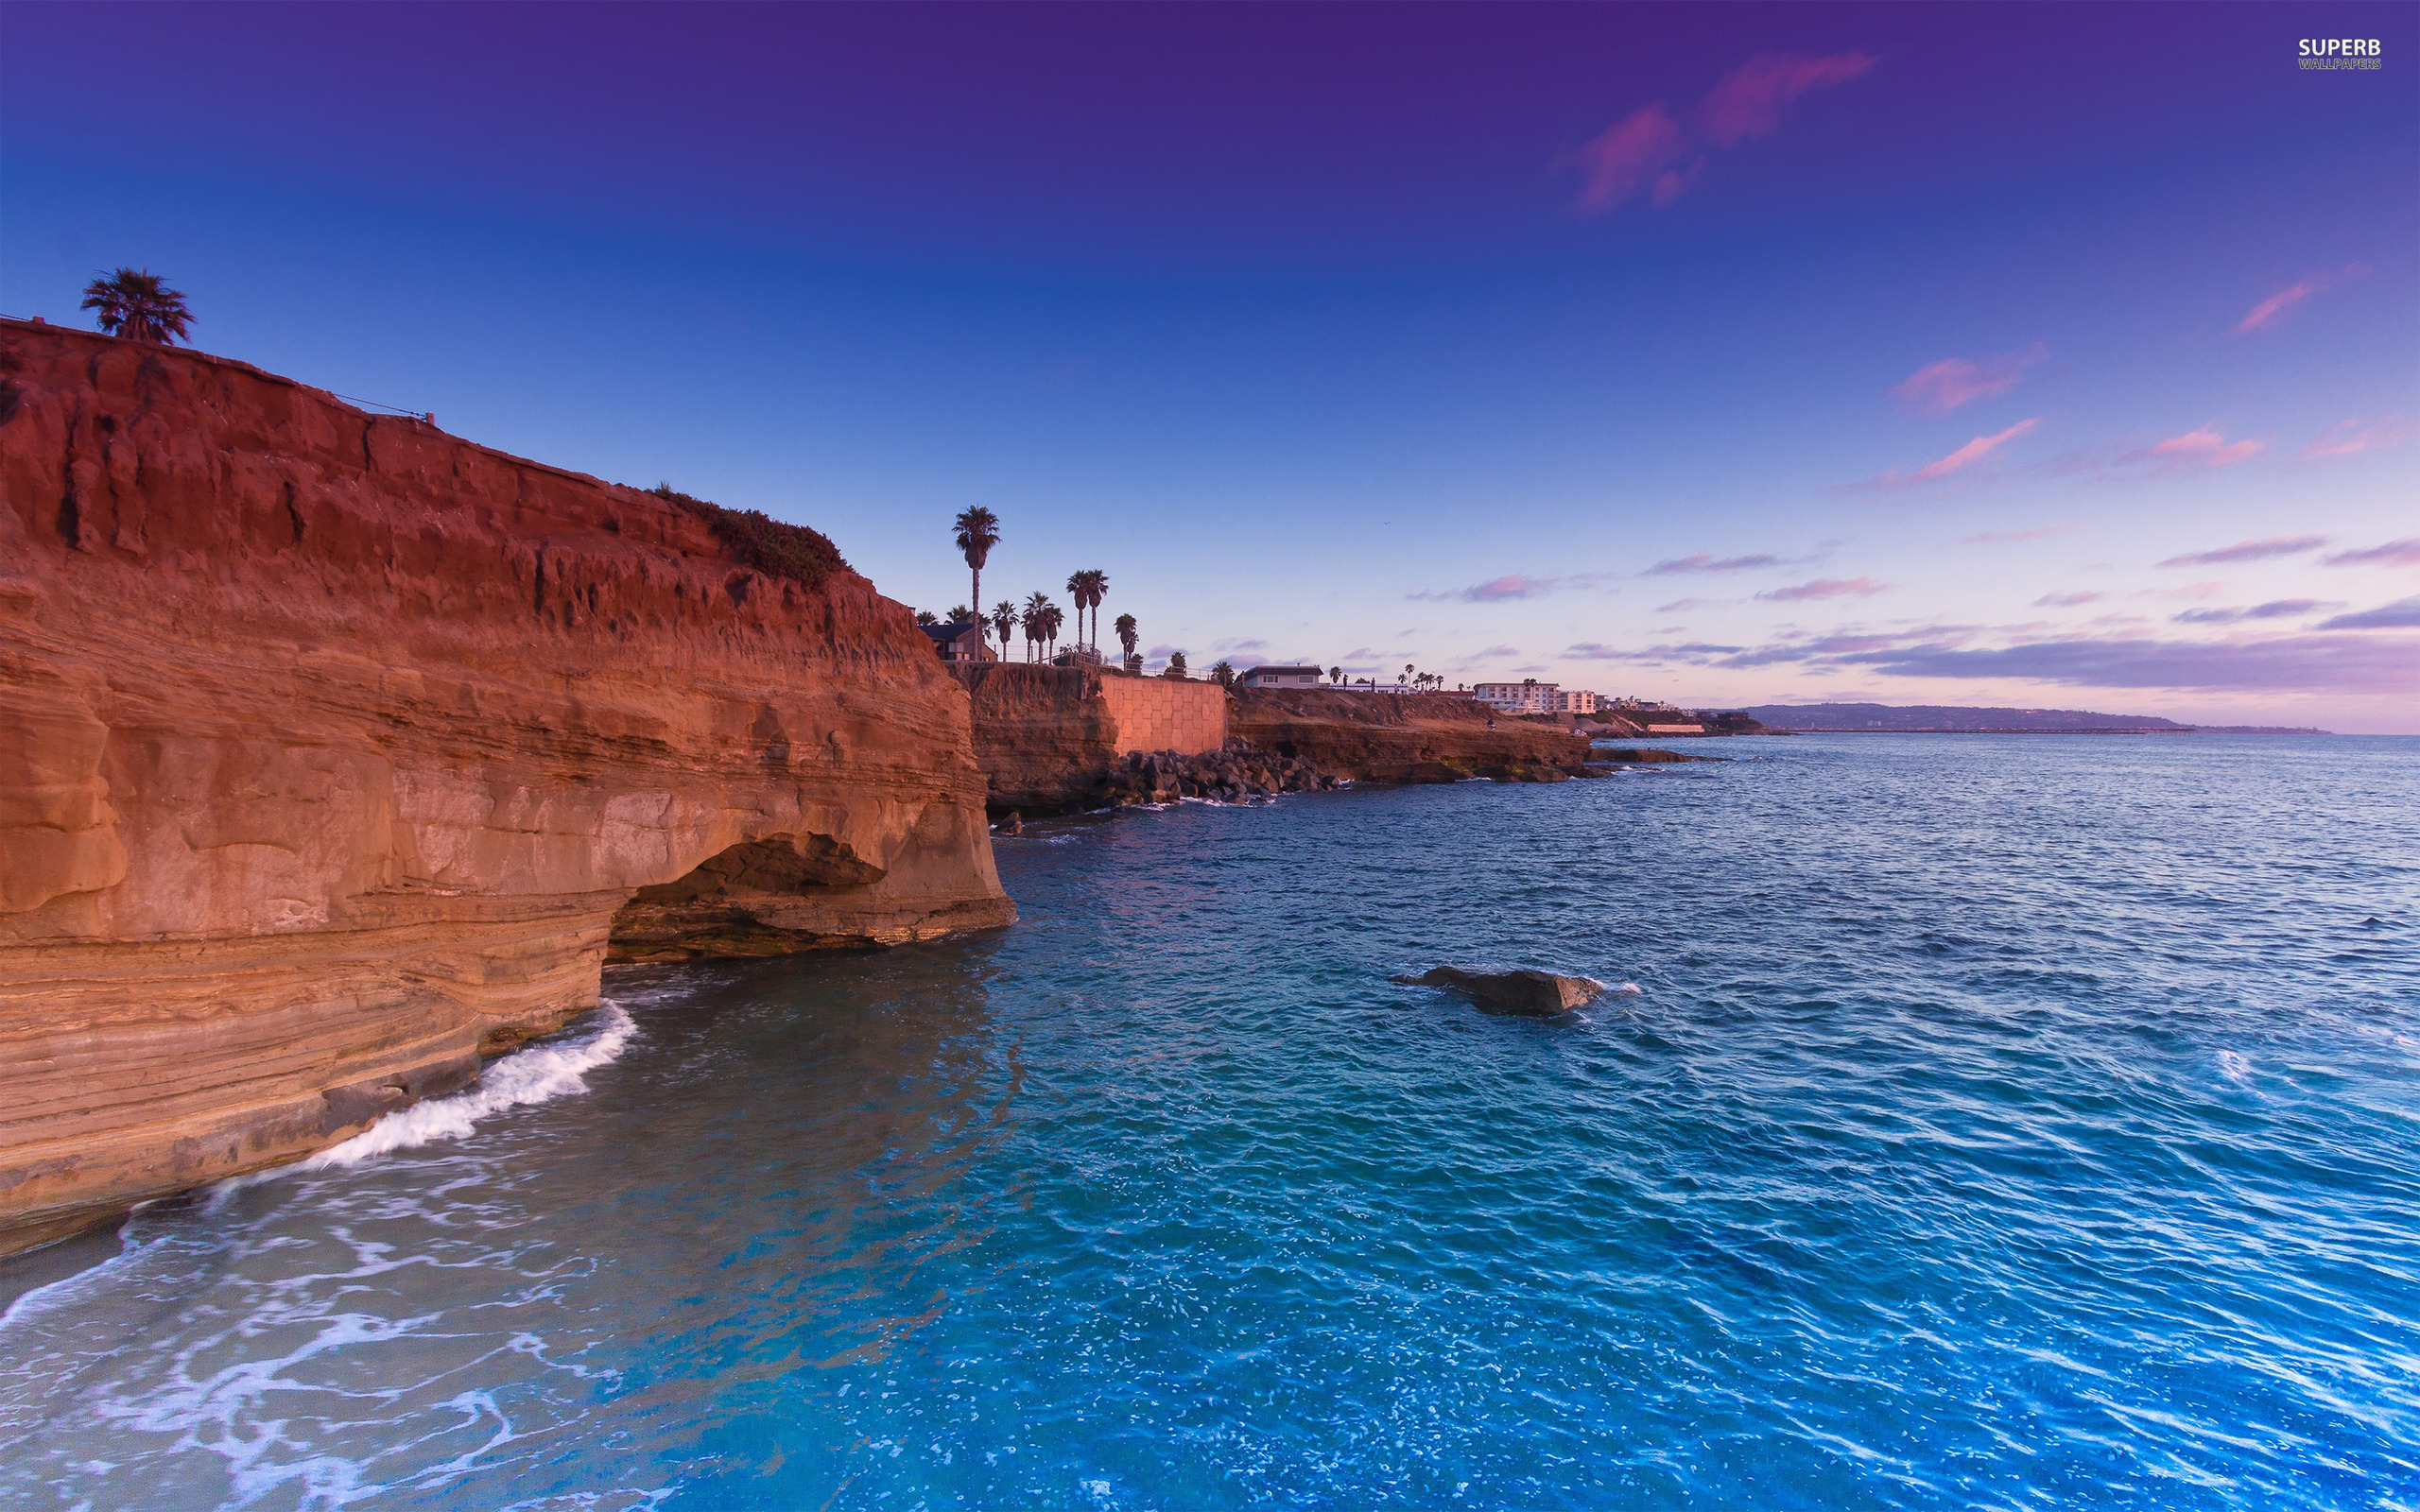 Cliff Sunset Ocean wallpaper   ForWallpapercom 2560x1600